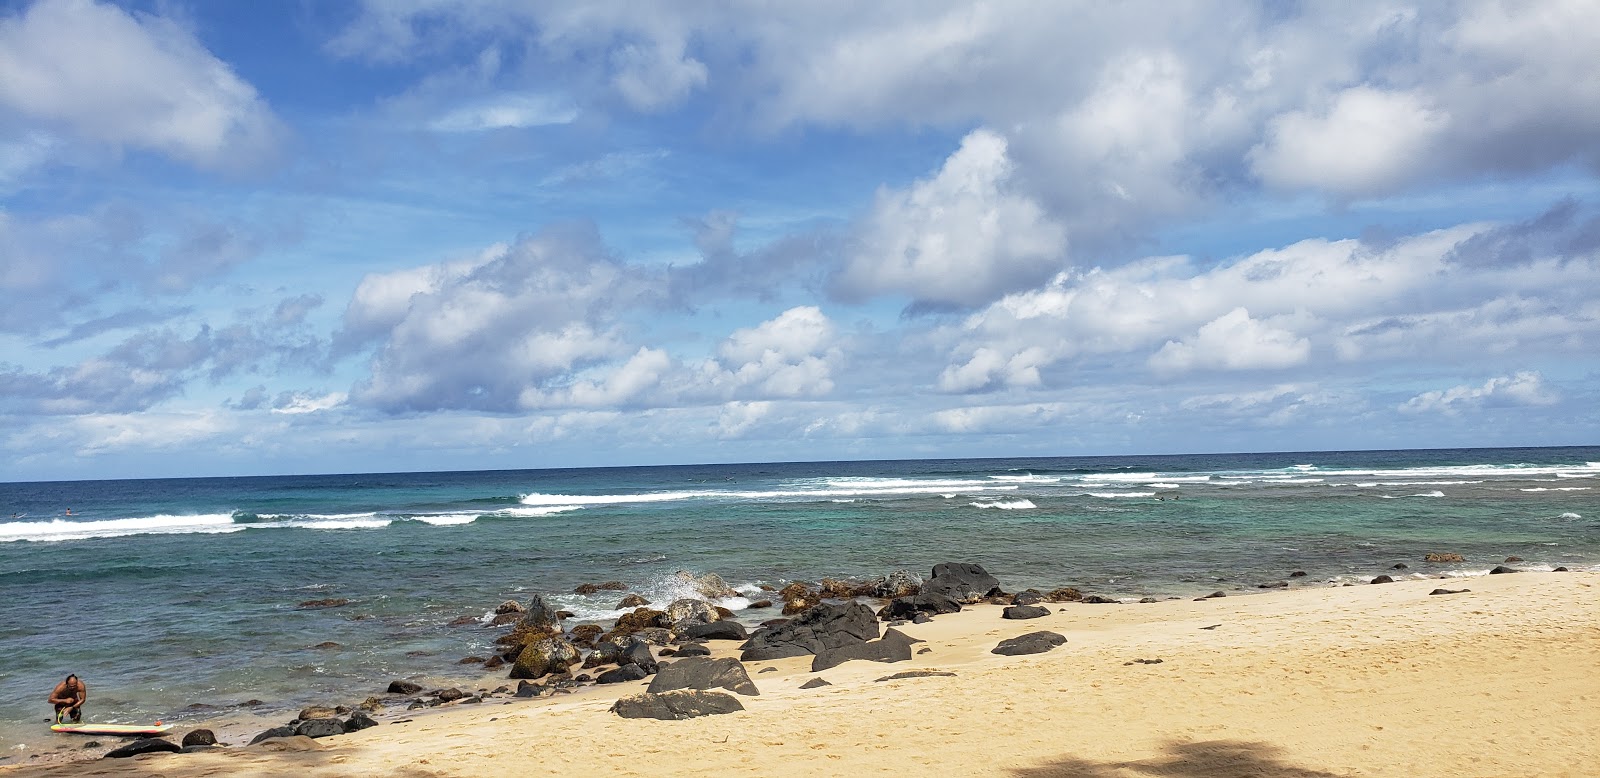 Foto af Kawailoa Beach - populært sted blandt afslapningskendere